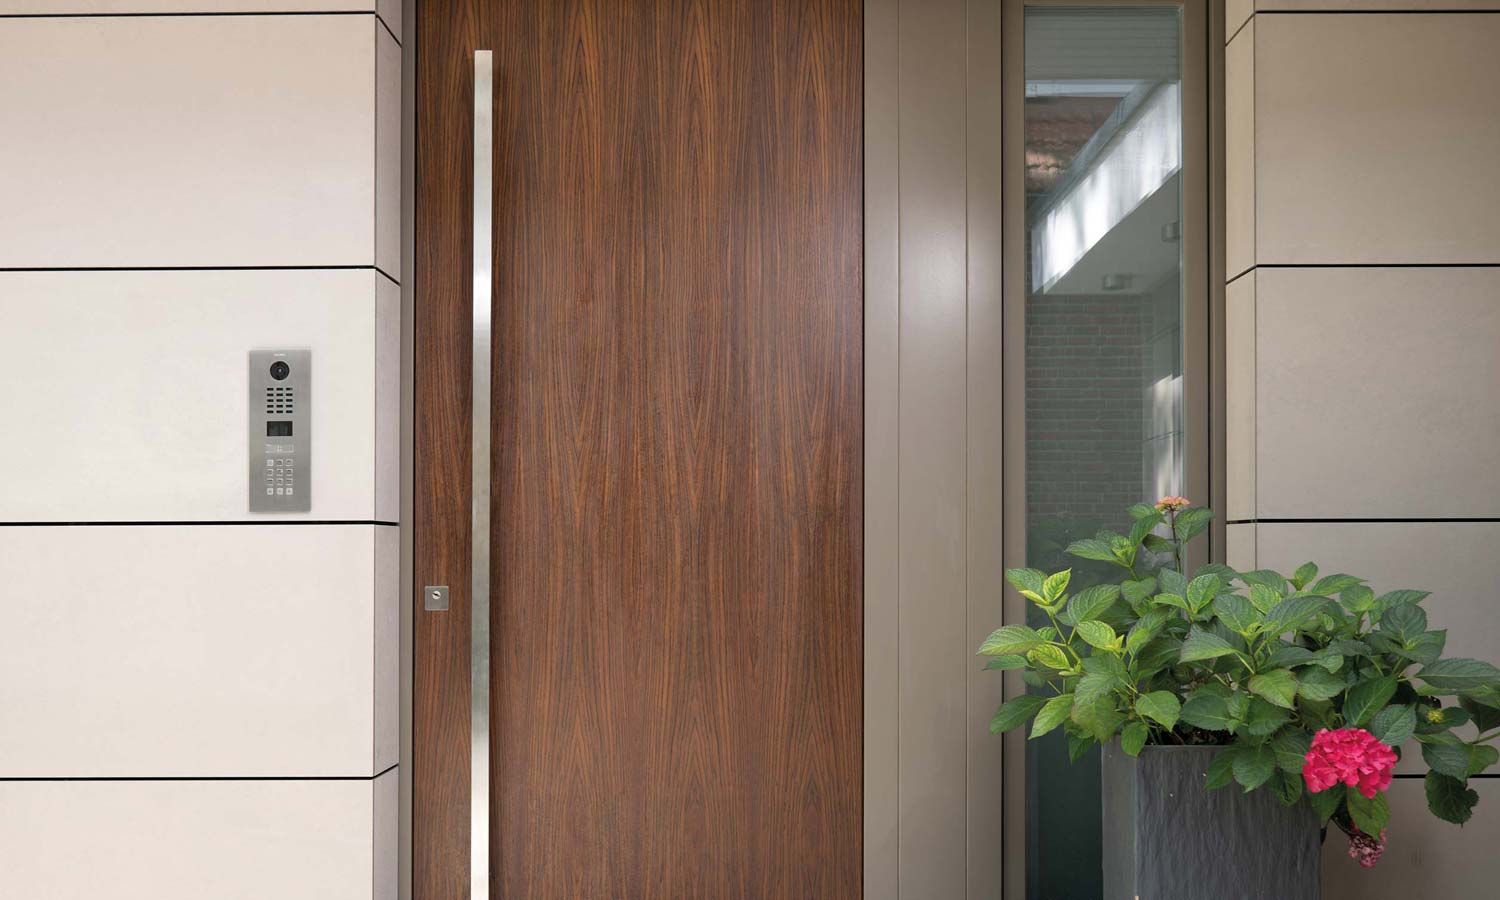 wooden door, silver handle, doorbird access panel on left